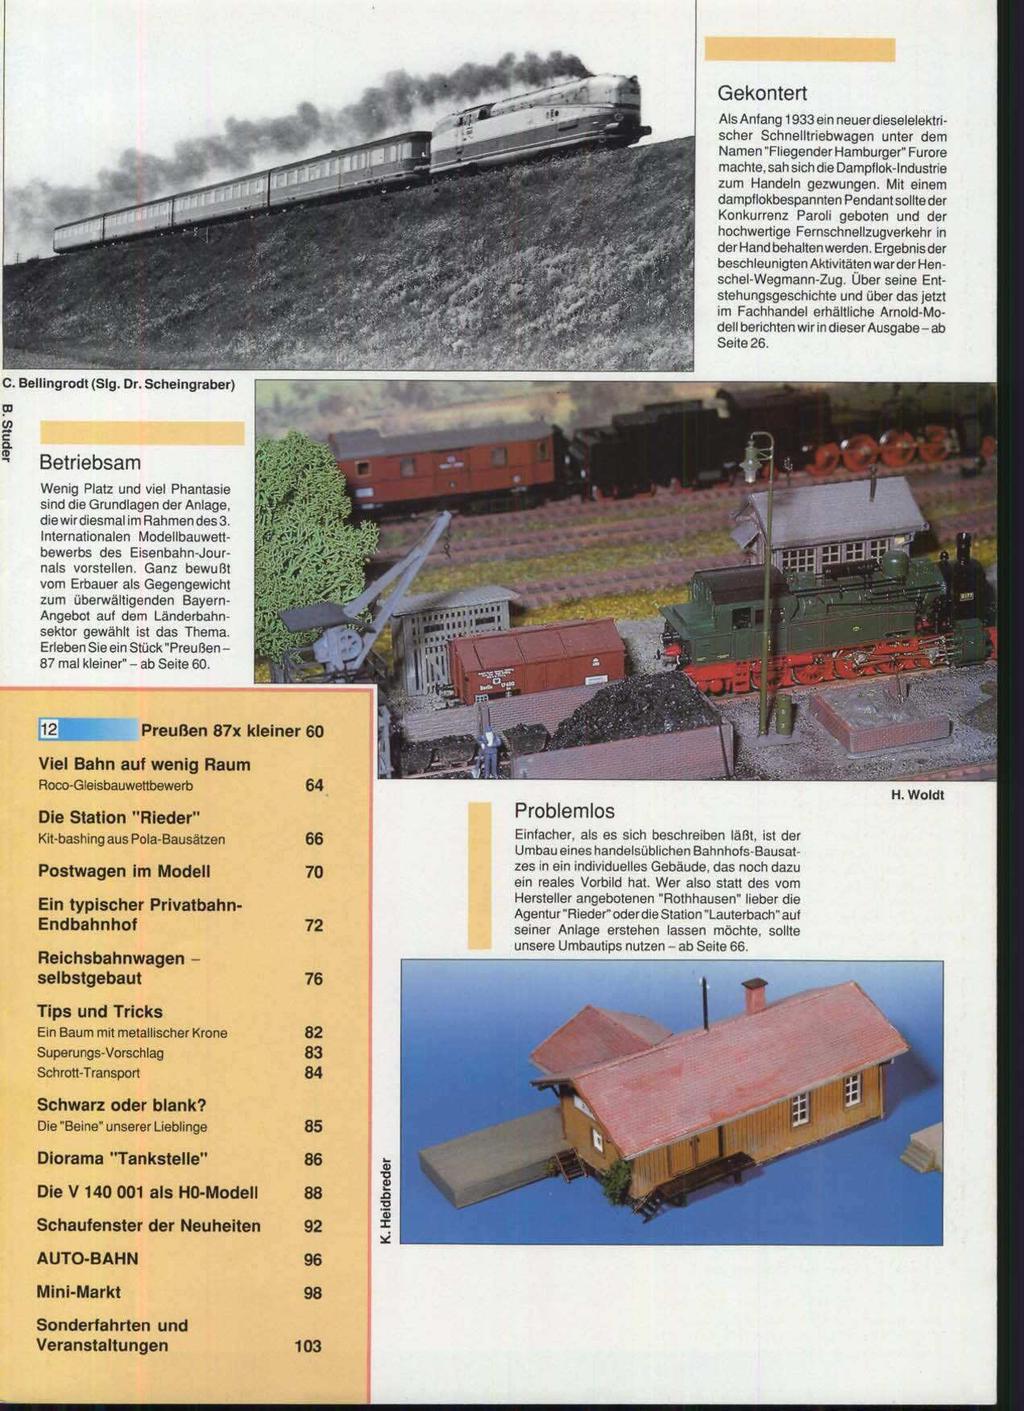 lellingrodt (Slg Betriebs&,,, B Wenig Platz und viel Phantasie sind die Grundlagen der Anlage, diewirdiesmal im Rahmendes3 Internationalen Modellbauwettbewerbs des Eisenbahn-Journals vorstellen.